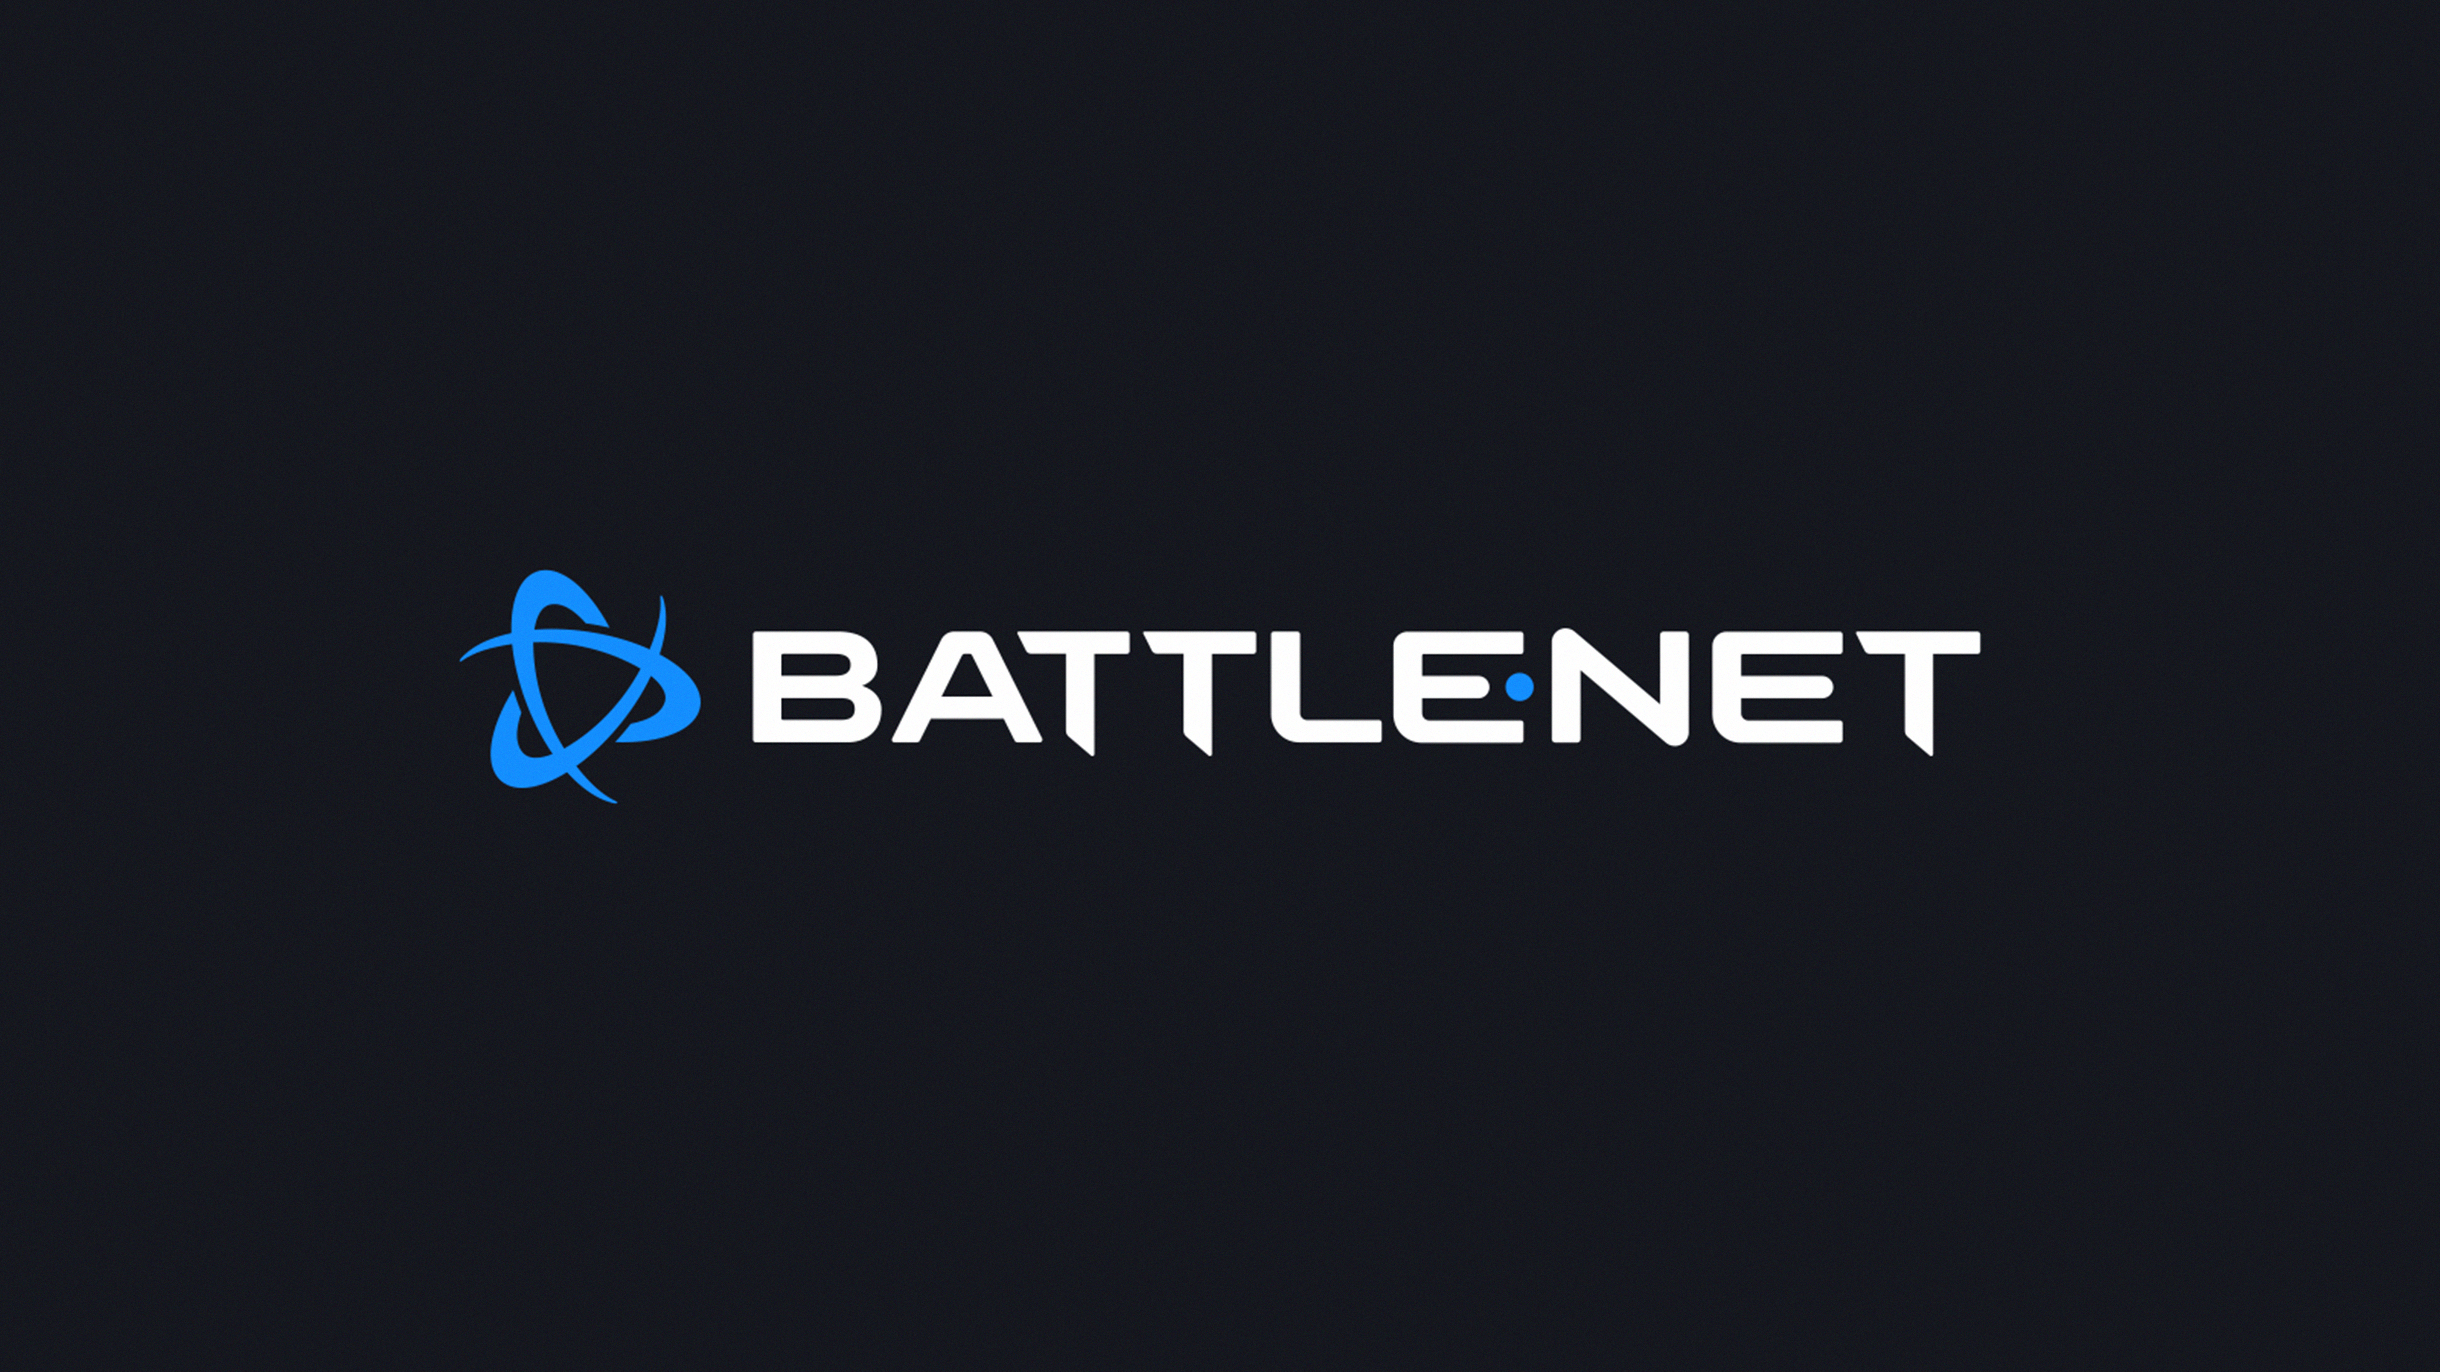  Battle.net